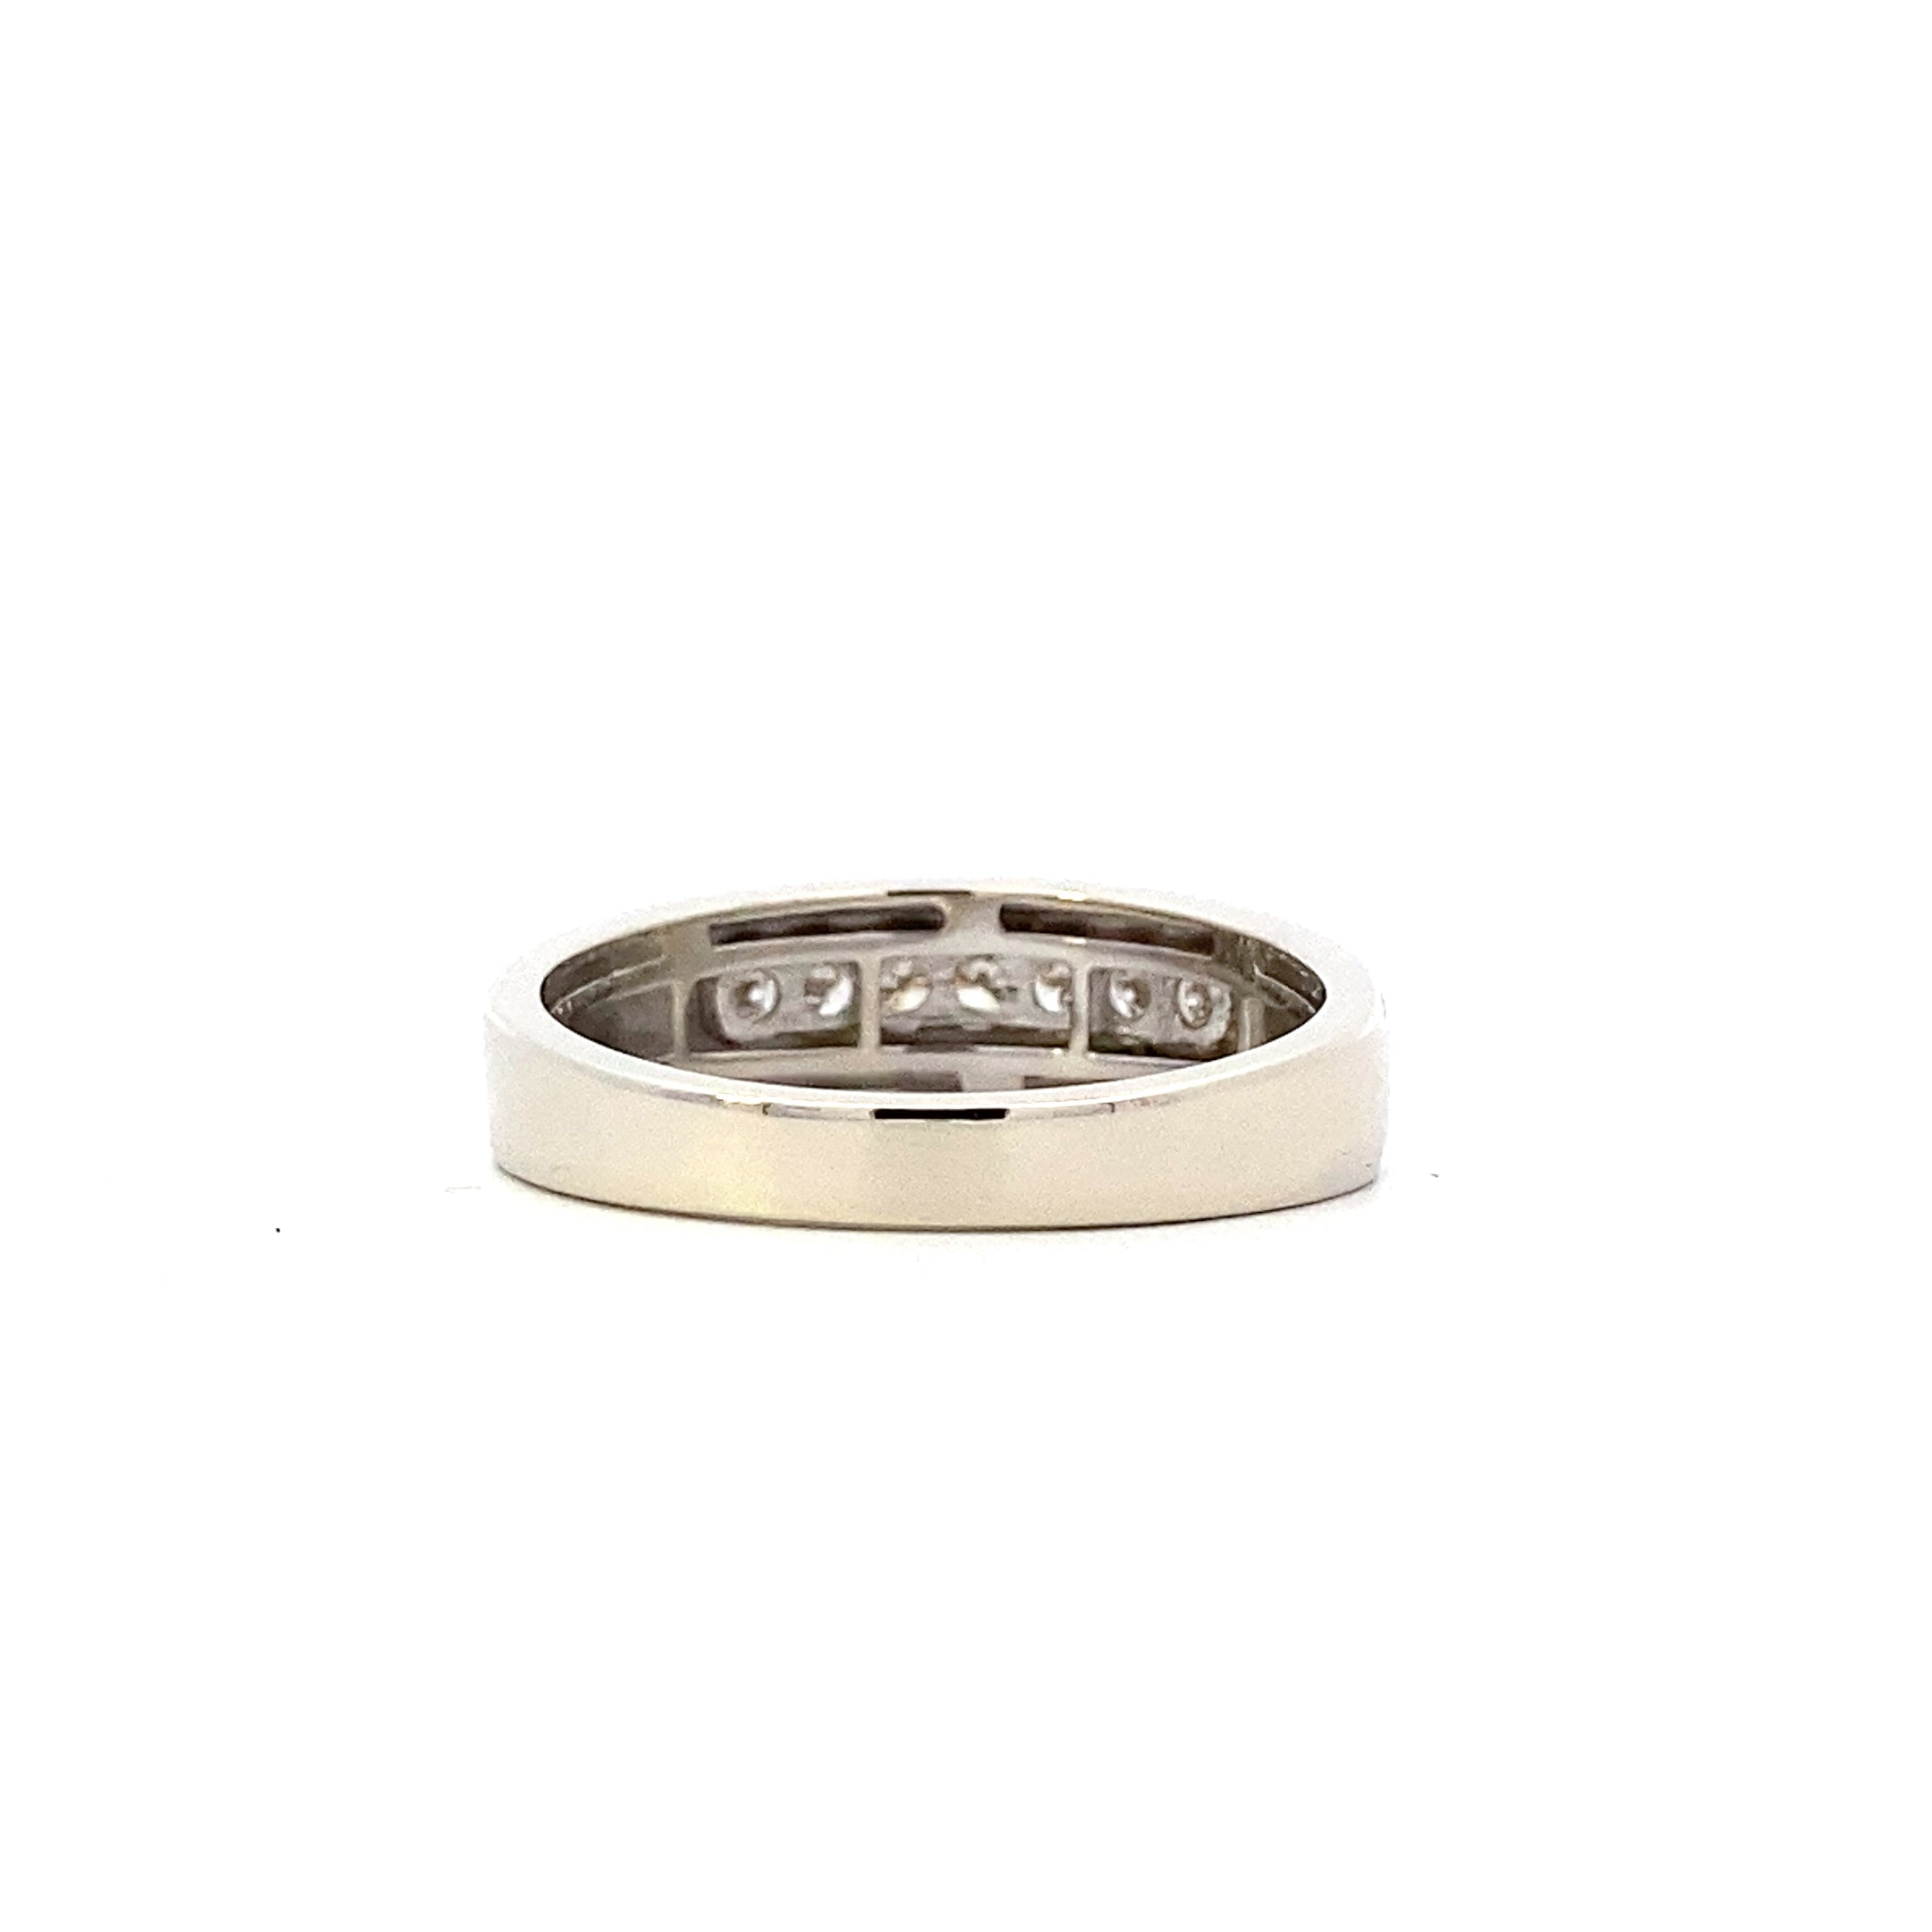 10K White Gold Diamond Ring - 0.28ct